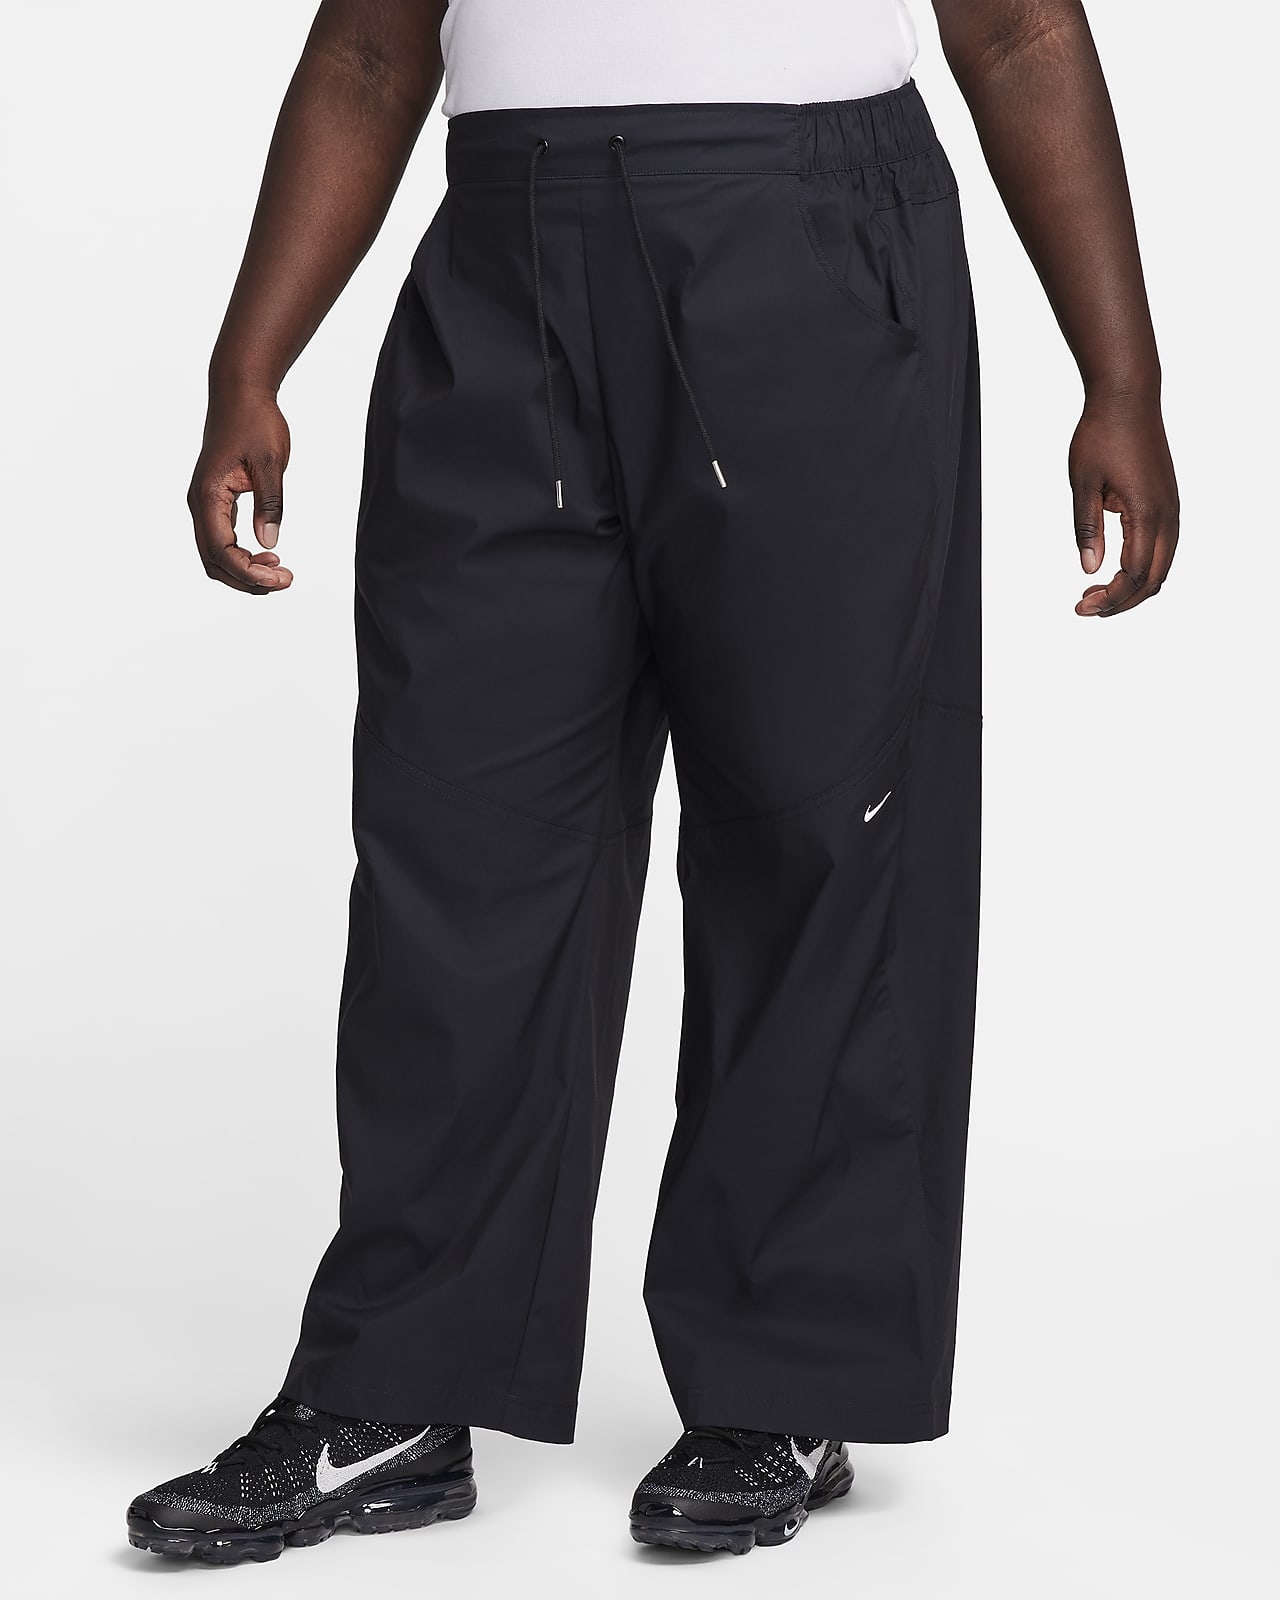 Pantalon taille haute tissé Nike Sportswear Essential pour femme (grande taille)